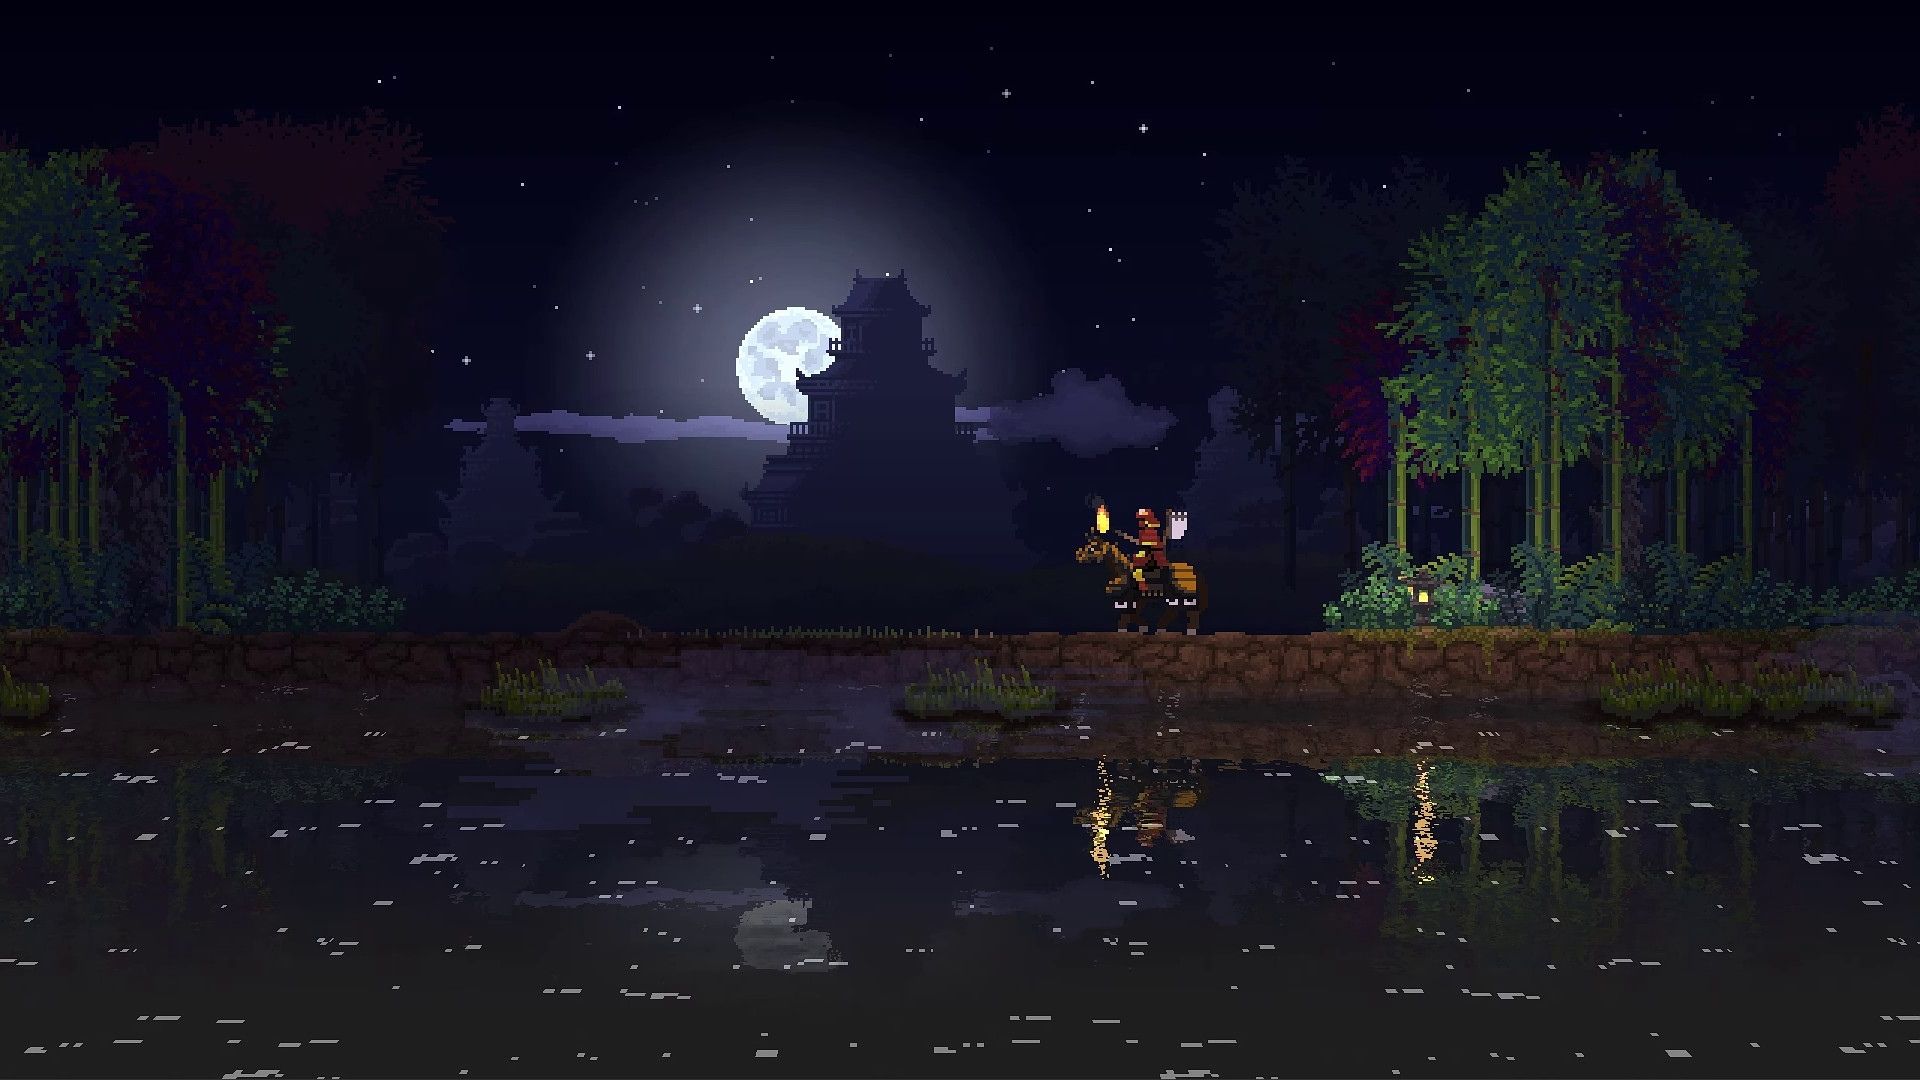 Uma captura de tela do reino duas coroas, mostrando uma pessoa em um cavalo, um lago e a lua